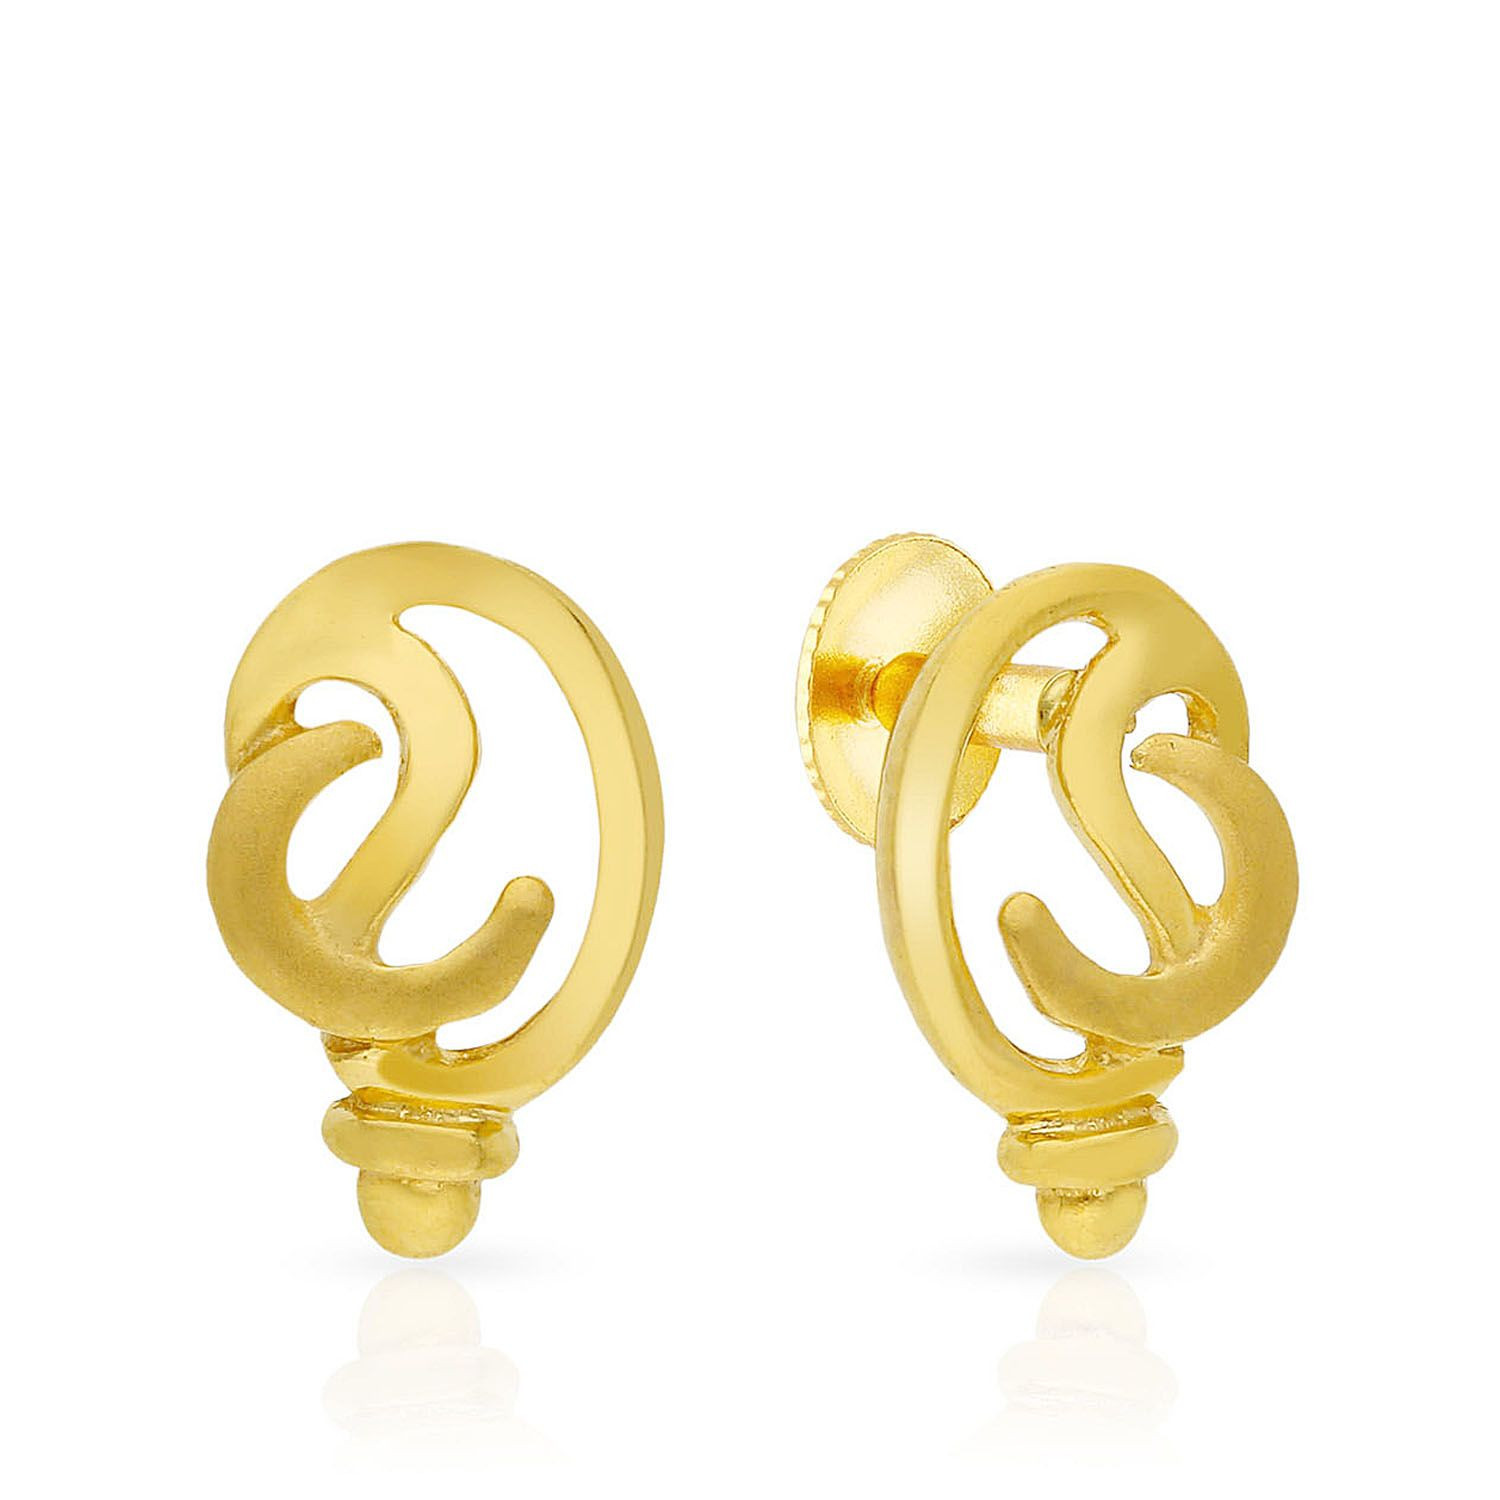 Malabar 22 KT Gold Studded Earring ERSK232A